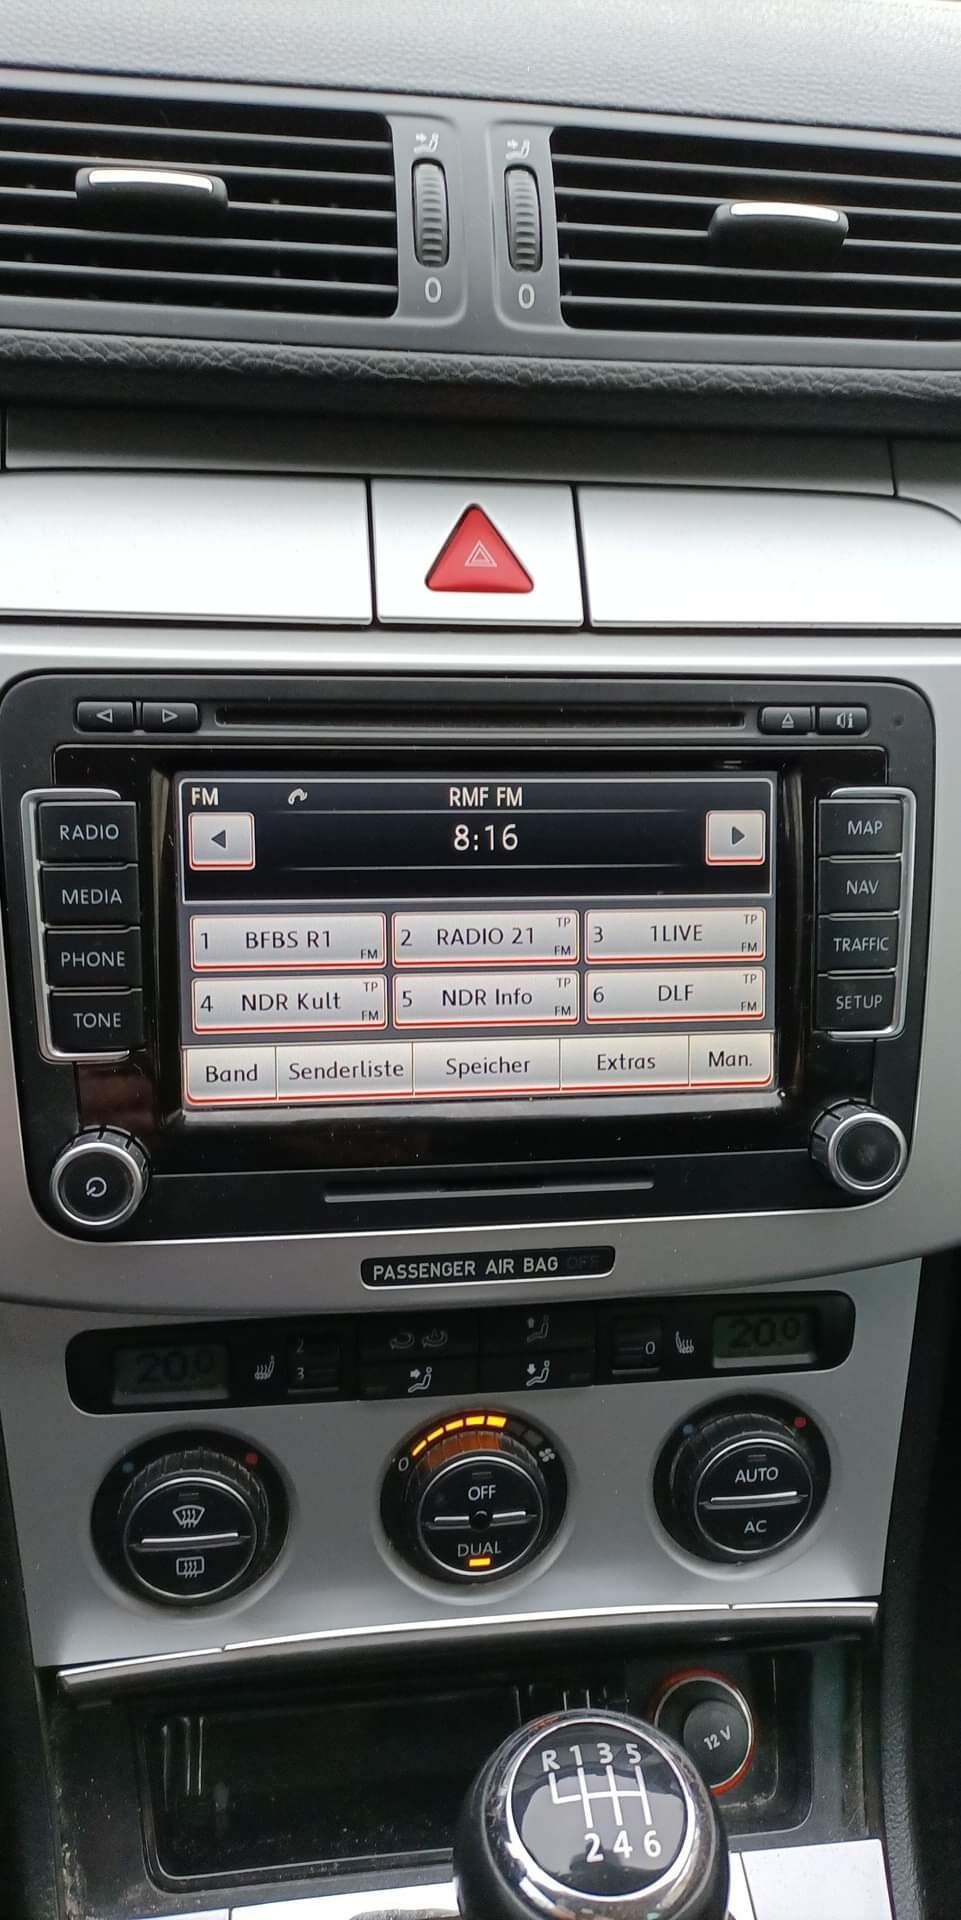 Polskie menu jezyk mapy Carplay Android Auto AUDI BMW VW Ford Nissan